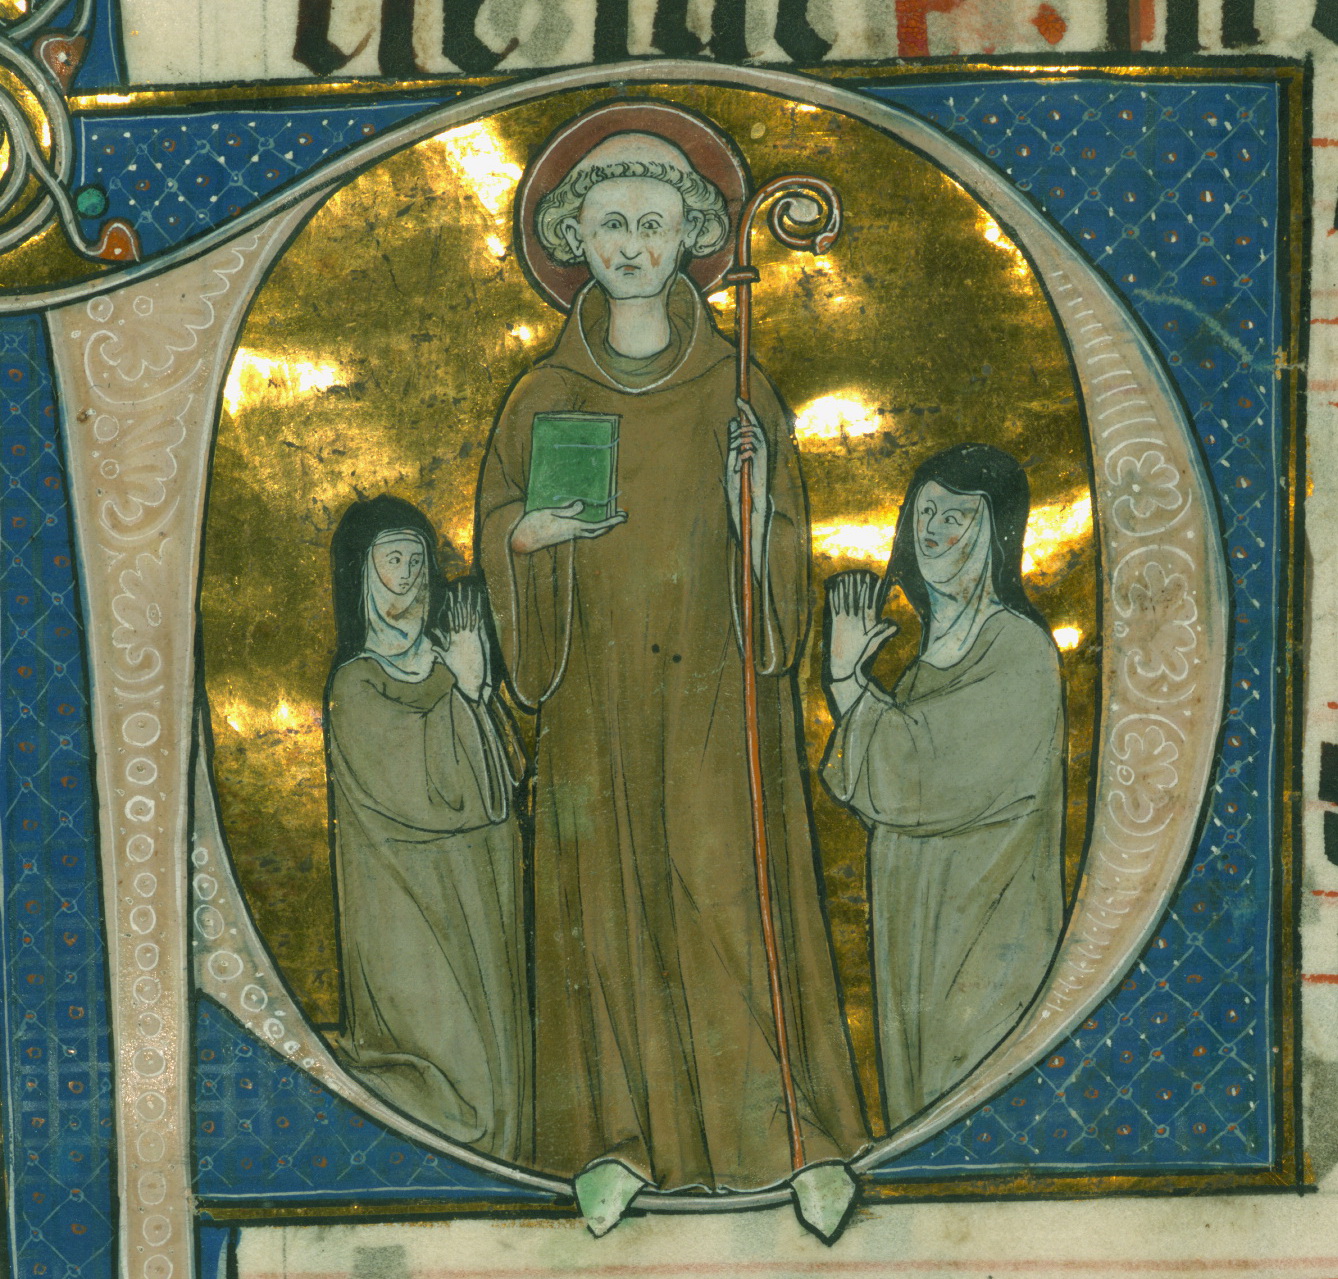 Retrato del siglo XIII del monje cisterciense francés Bernardo de Claraval, patrono de los caballeros templarios.